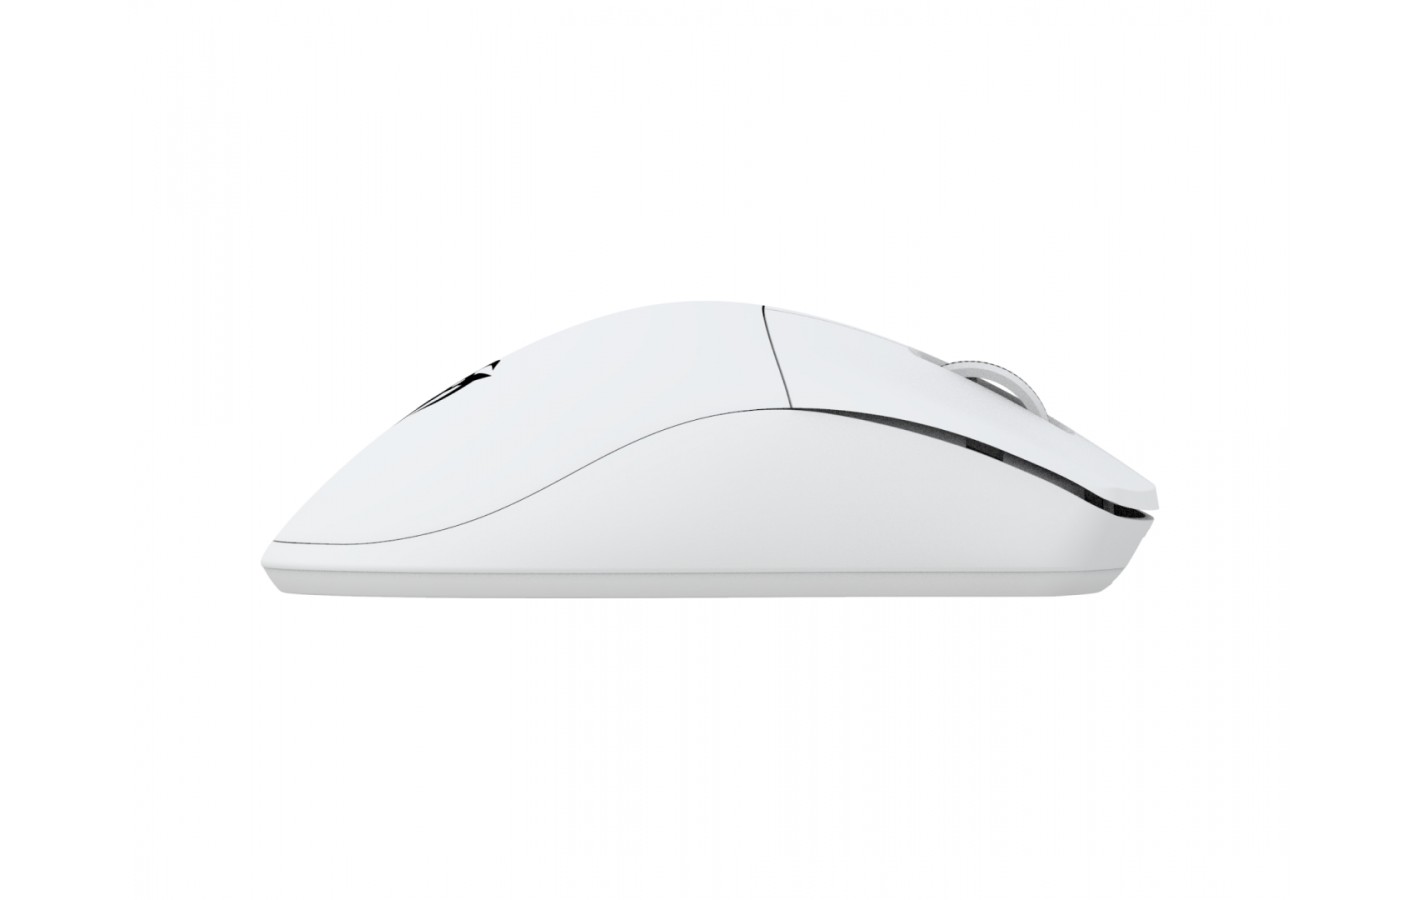 Безпровідна ігрова мишка Ninjutso Origin One X White Wireless PixArt PAW 3335